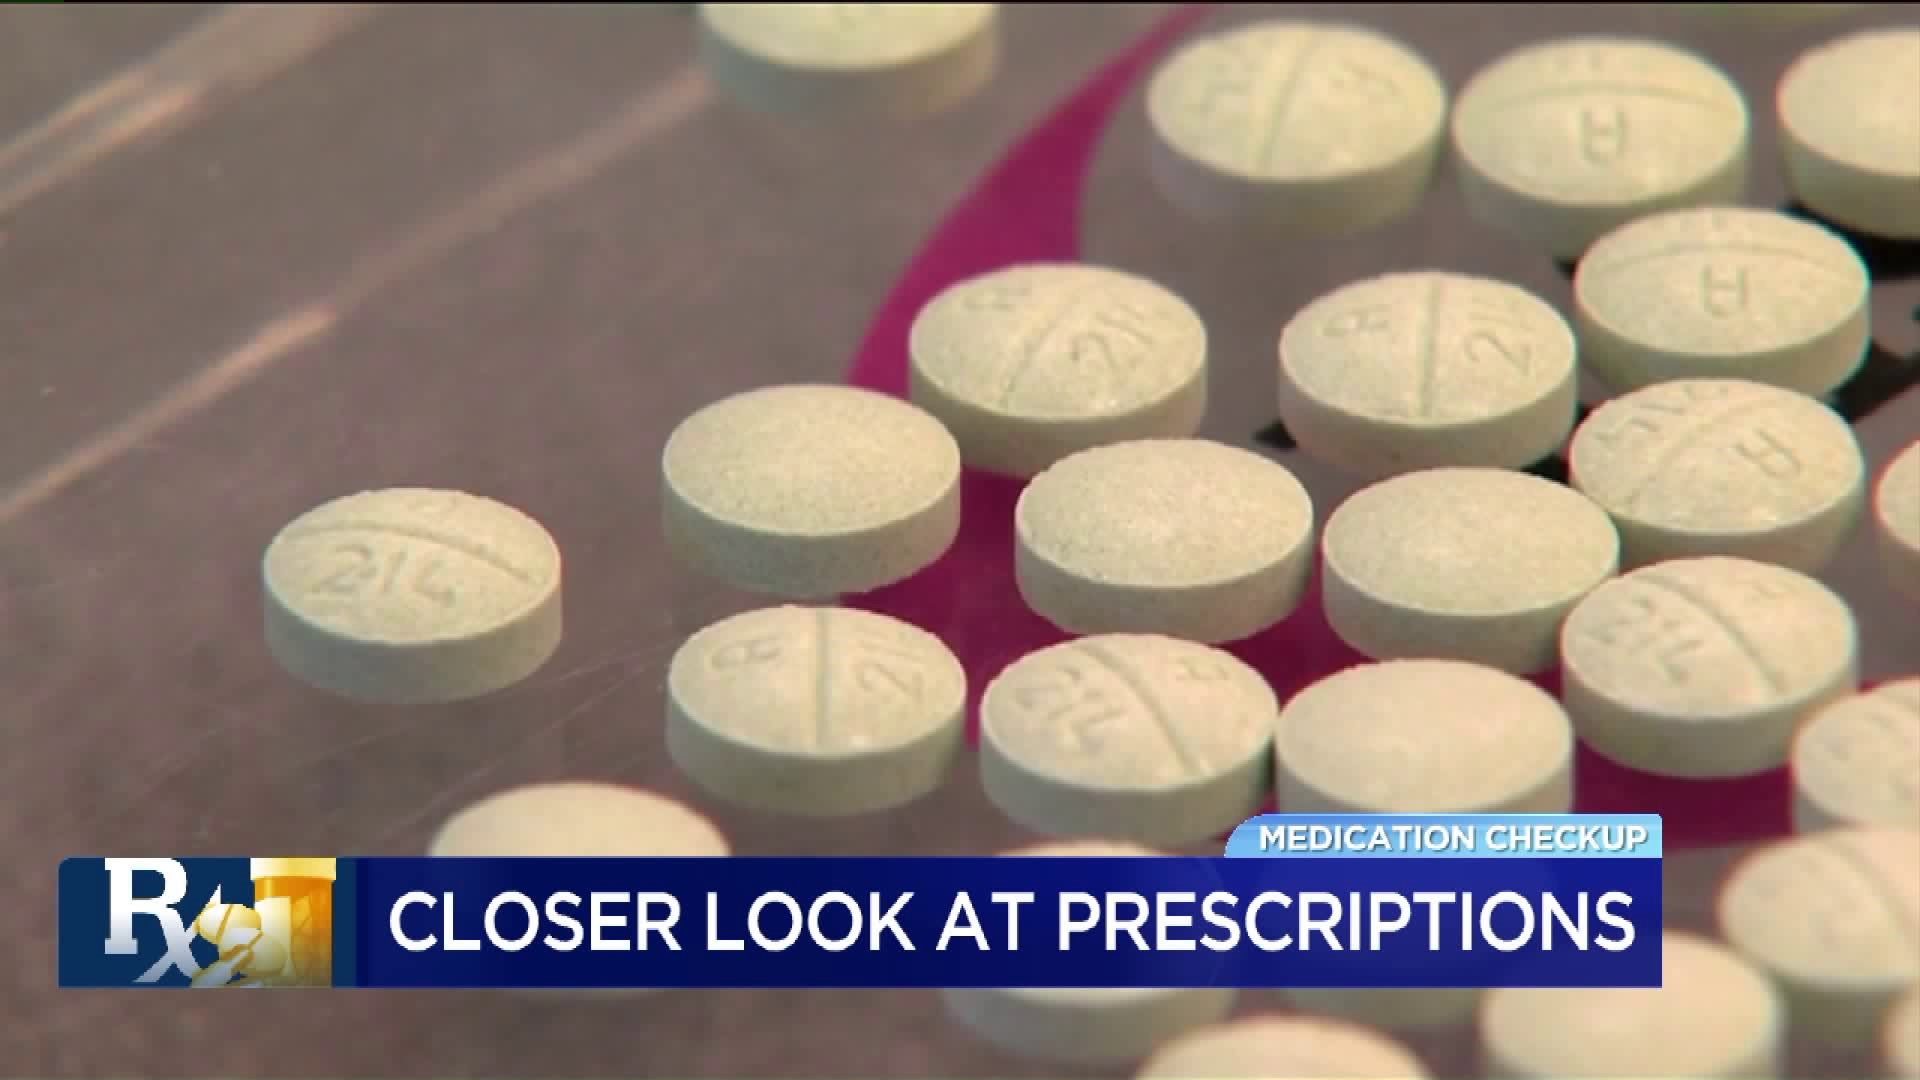 Closer Look at Prescriptions